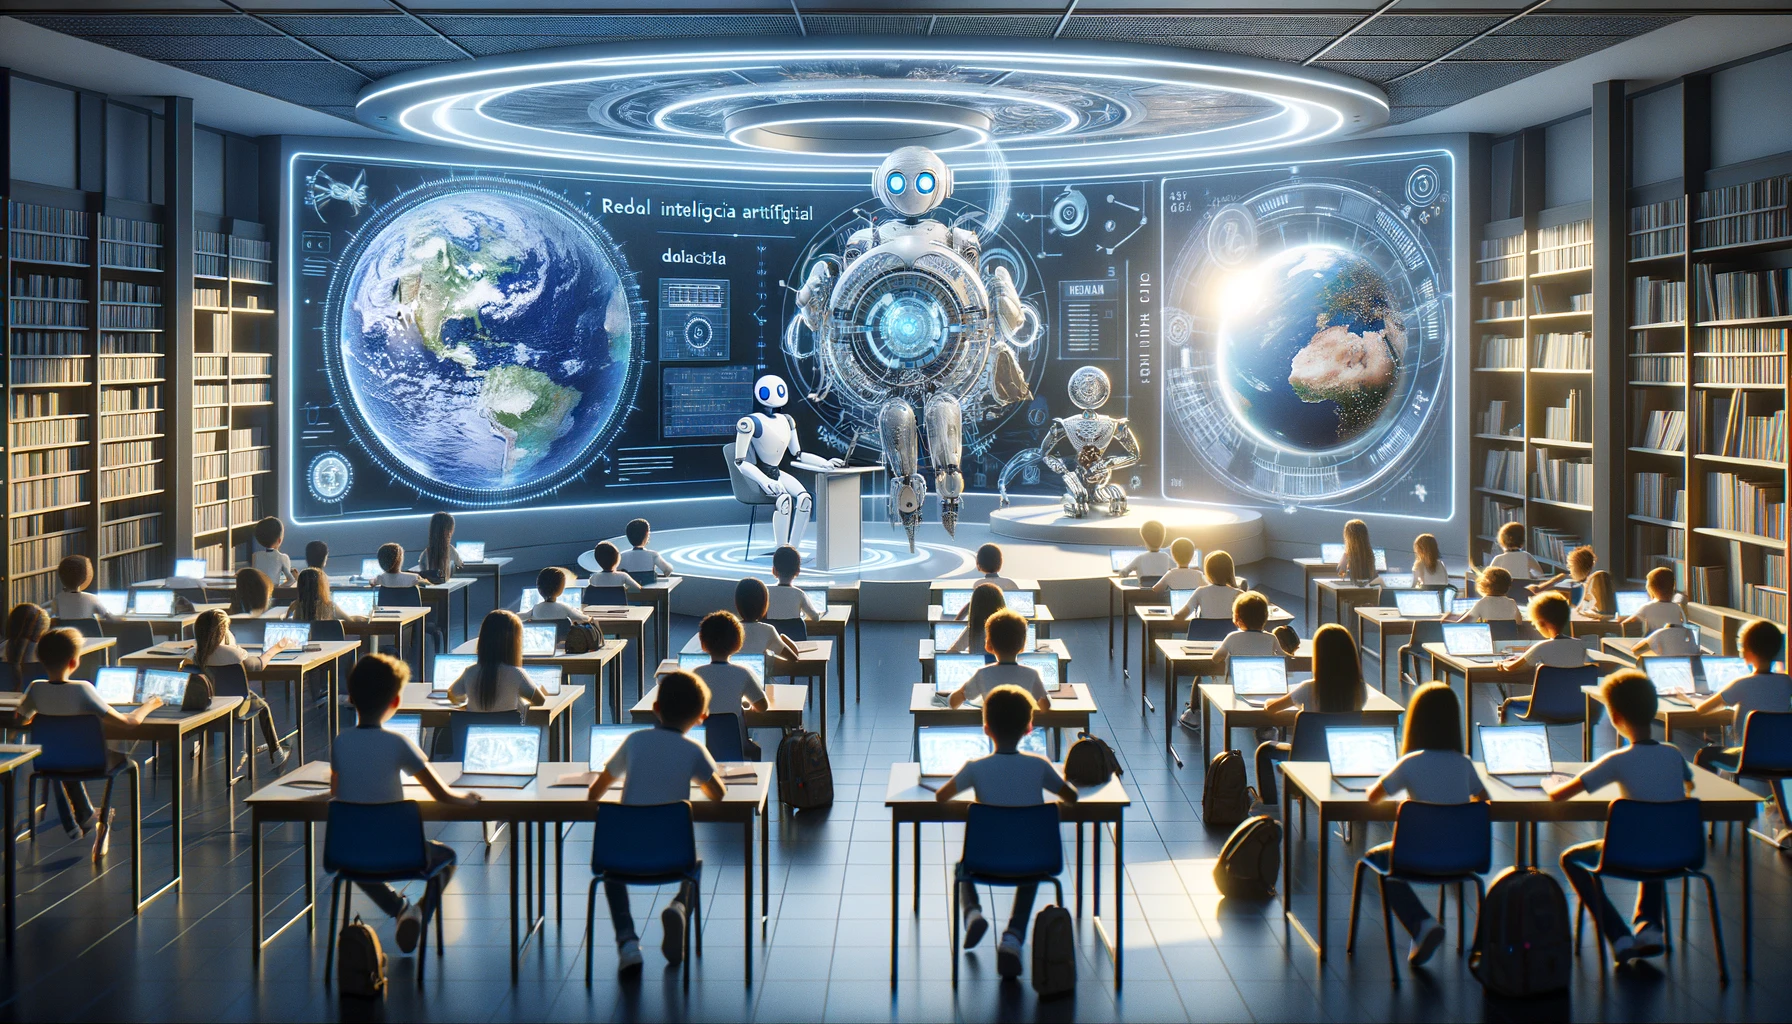 aula del futuro donde la inteligencia artificial interactua con estudiantes